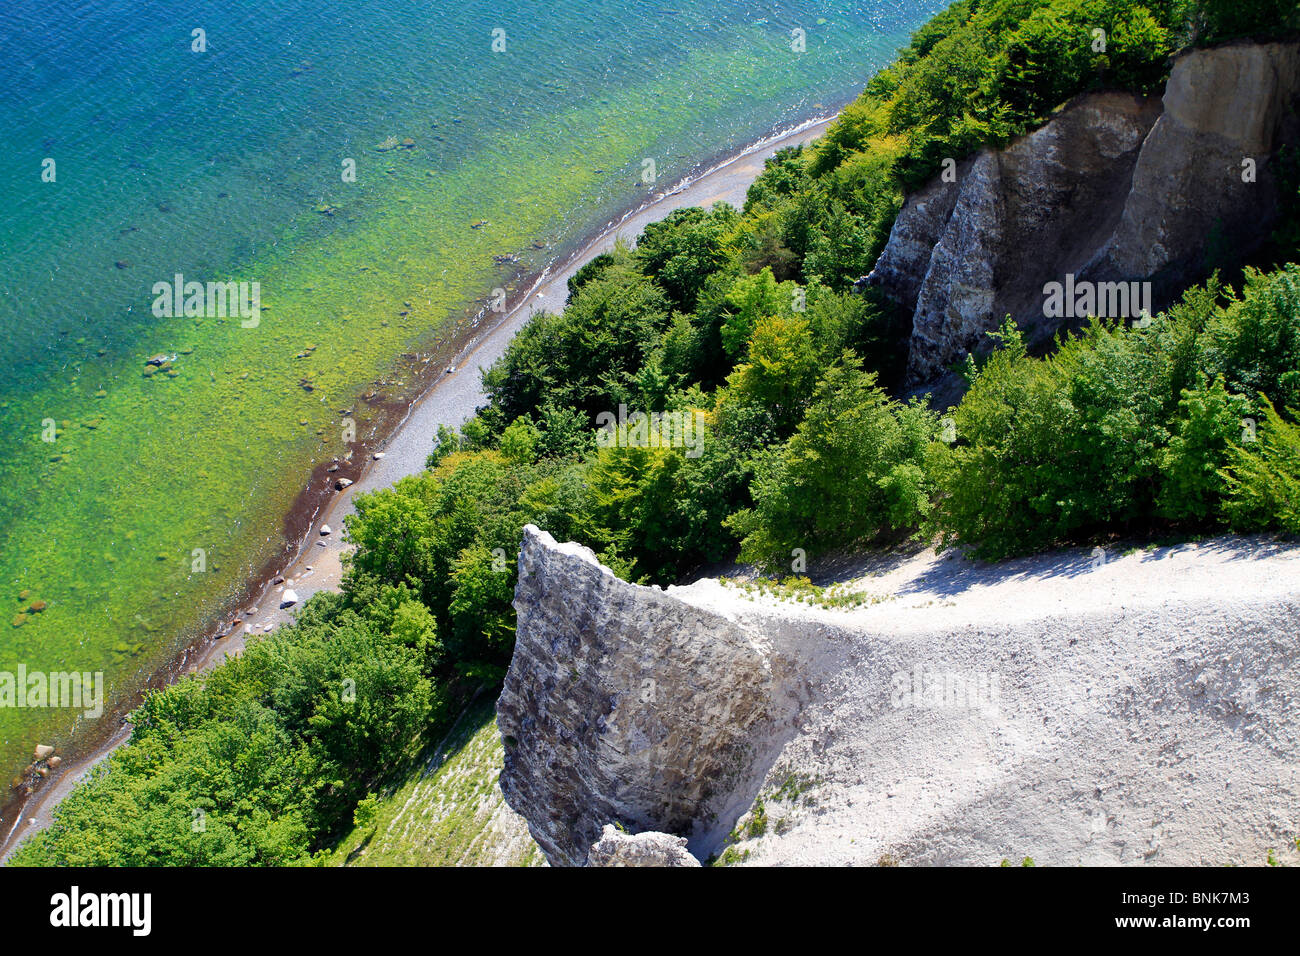 Chalk cliff, Victoria Sicht, Jasmund National Park, Ruegen island, Mecklenburg Western Pomerania, Germany, Europe Stock Photo